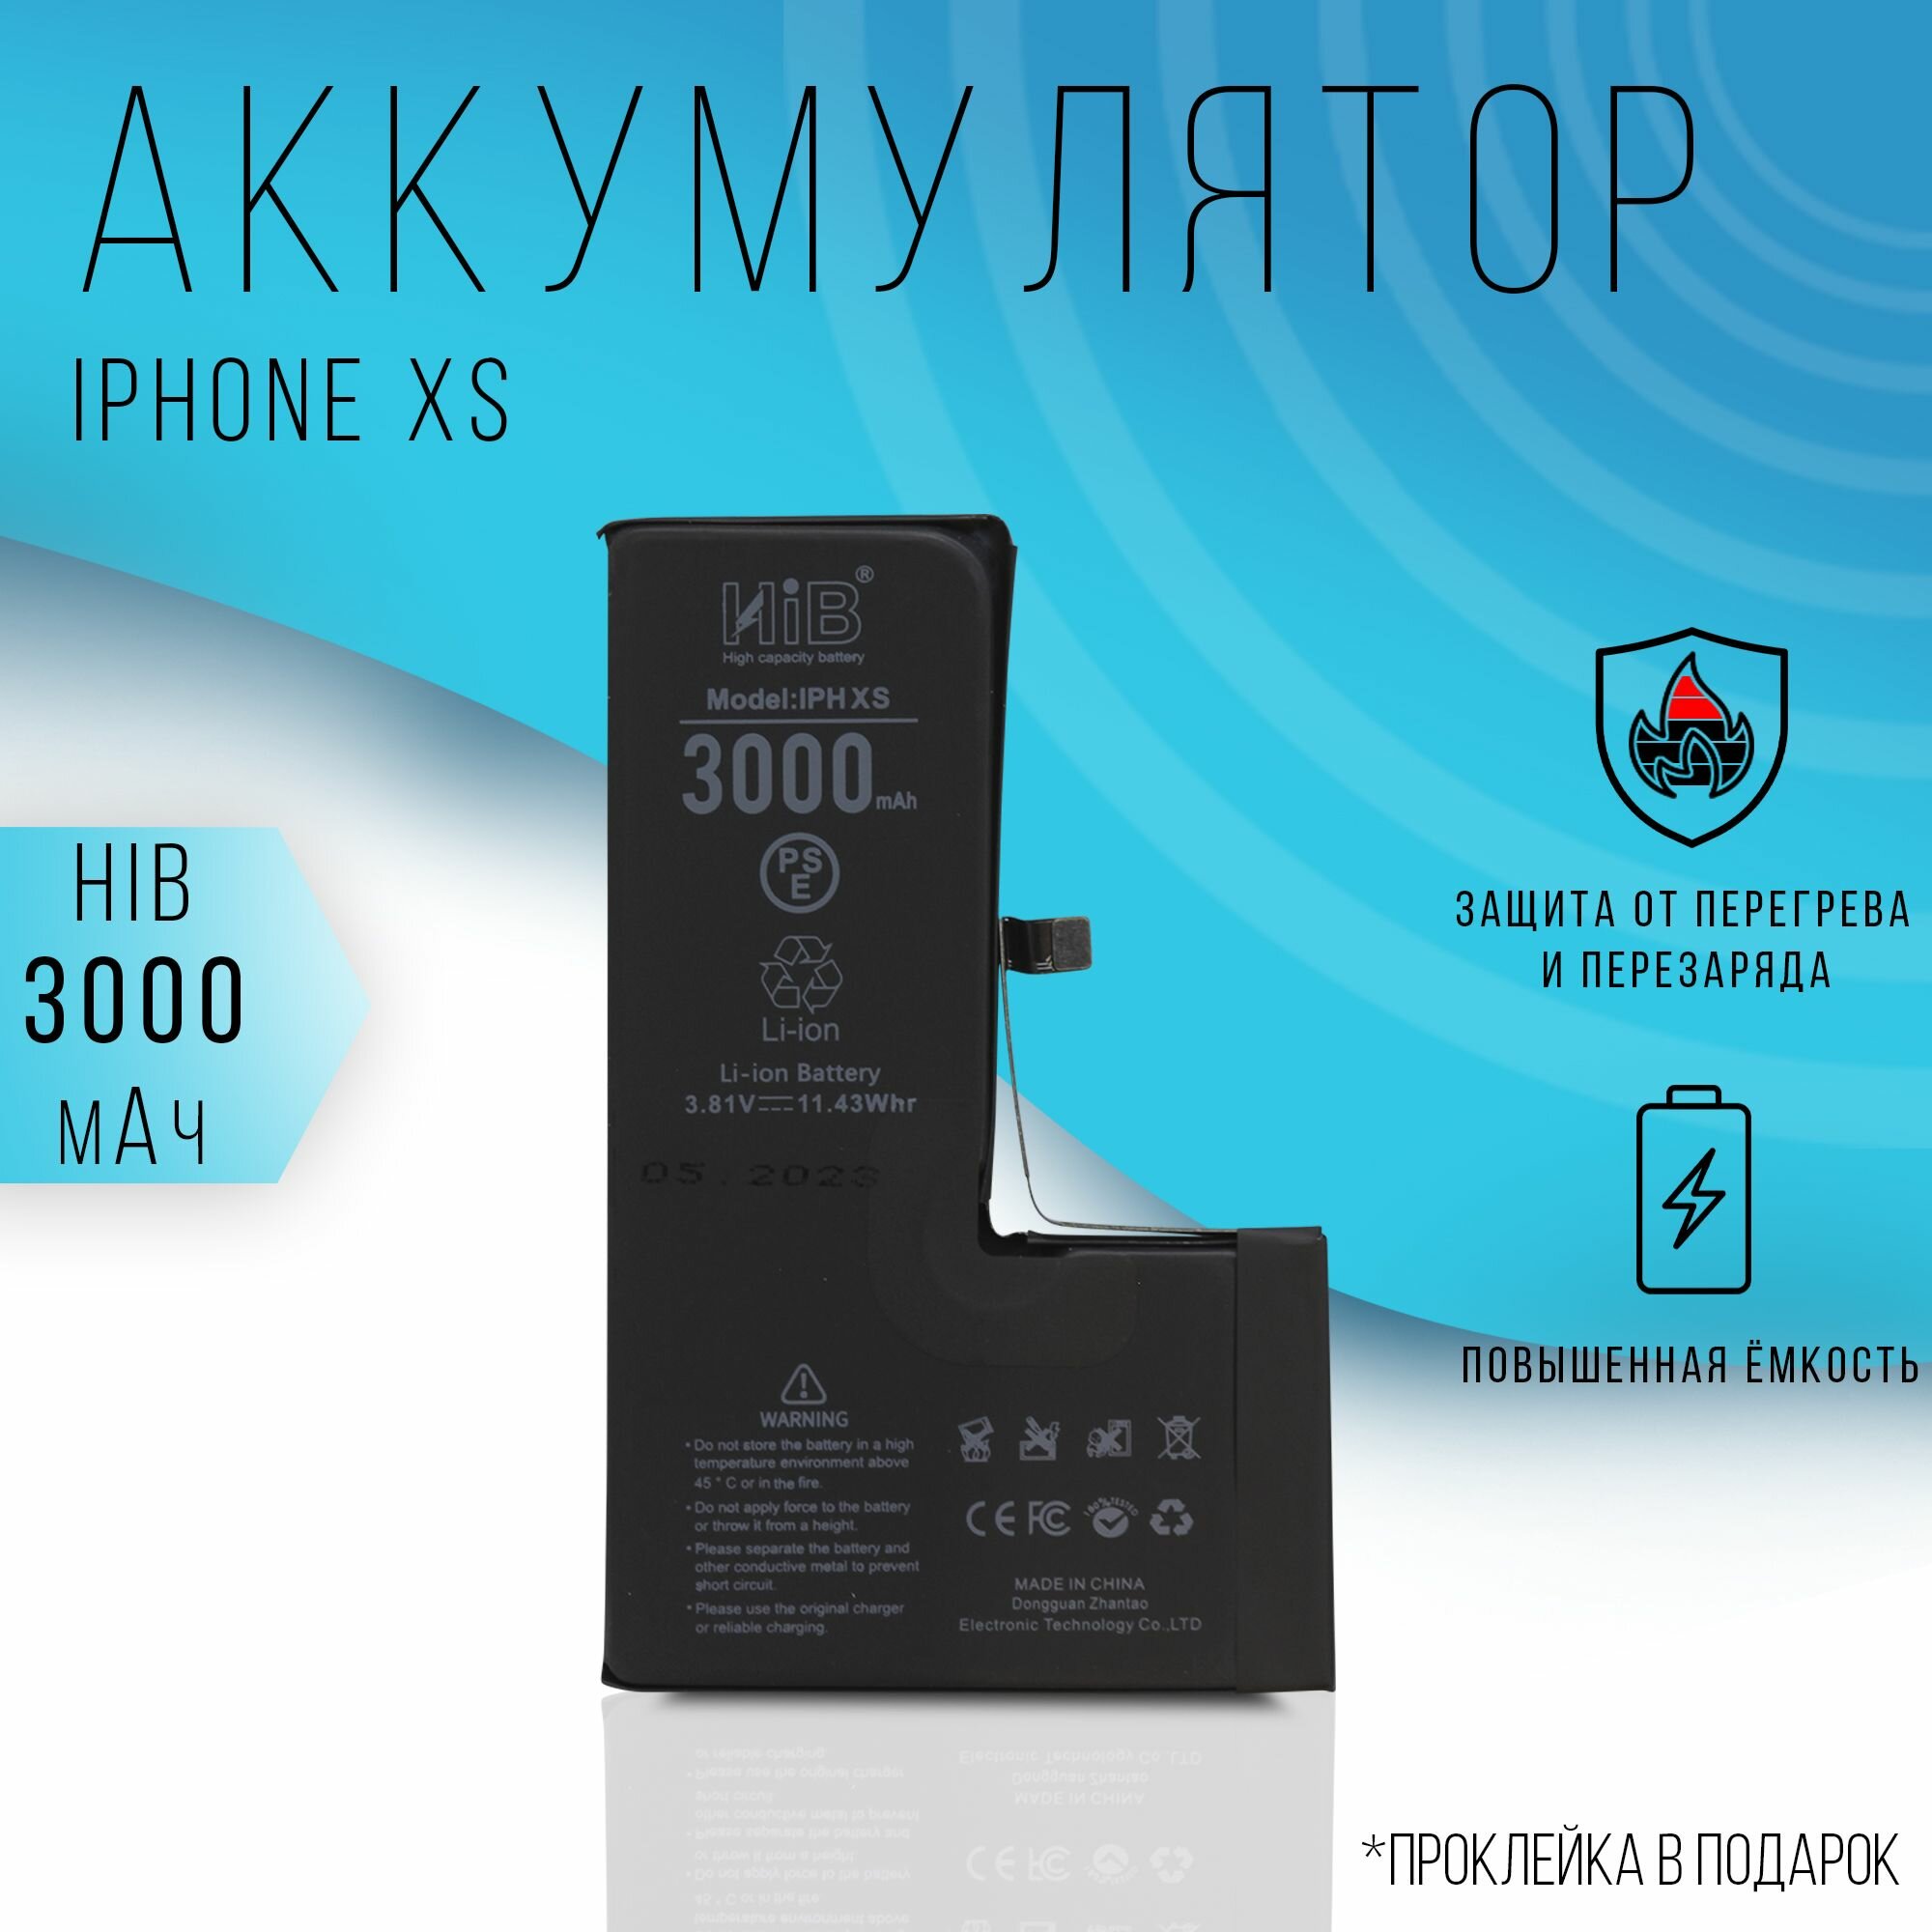 Аккумулятор HIB iPhone XS c повышенной емкостью